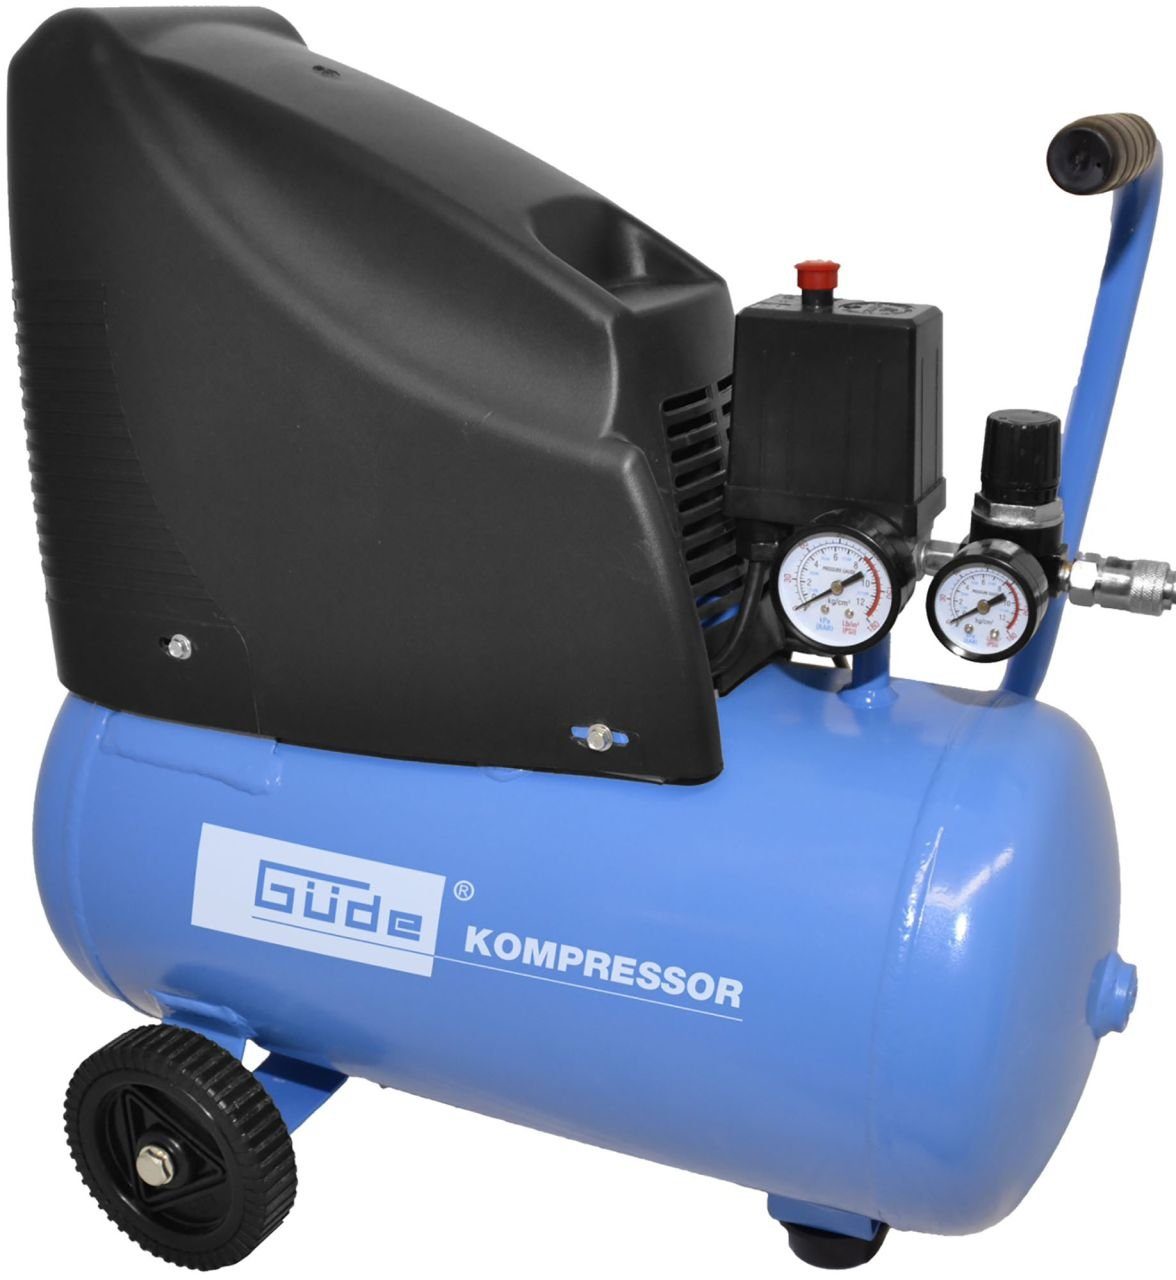 Güde Kompressor 220/08/24 ölfrei, 1100 W, max. 8 bar, 24 l, Liefermenge  effektiv: ca. 100l/min